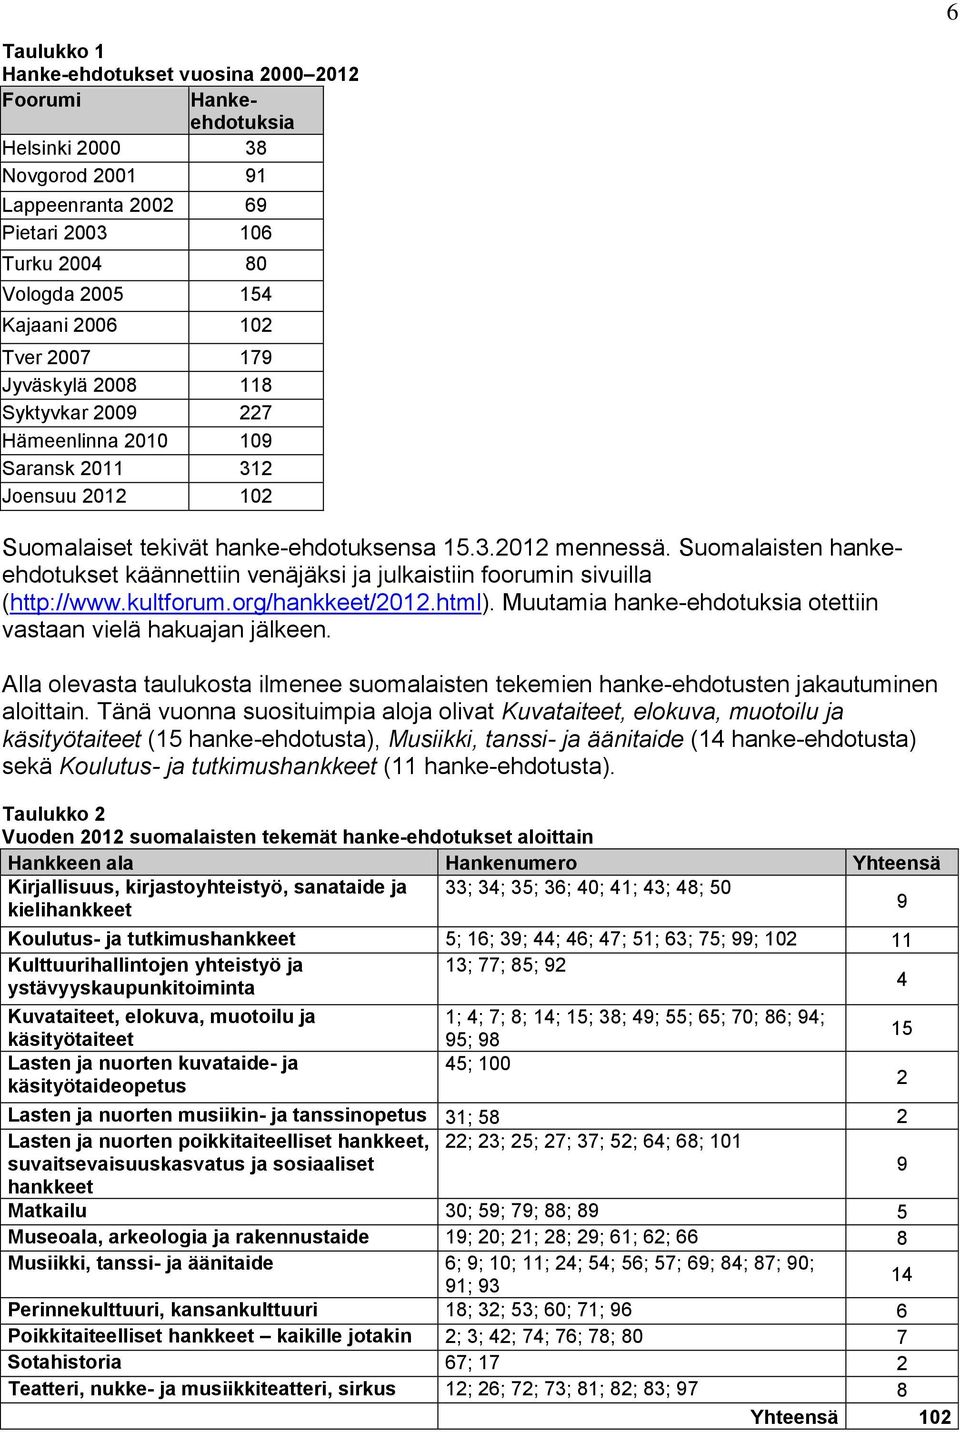 Suomalaisten hankeehdotukset käännettiin venäjäksi ja julkaistiin foorumin sivuilla (http://www.kultforum.org/hankkeet/2012.html). Muutamia hanke-ehdotuksia otettiin vastaan vielä hakuajan jälkeen.